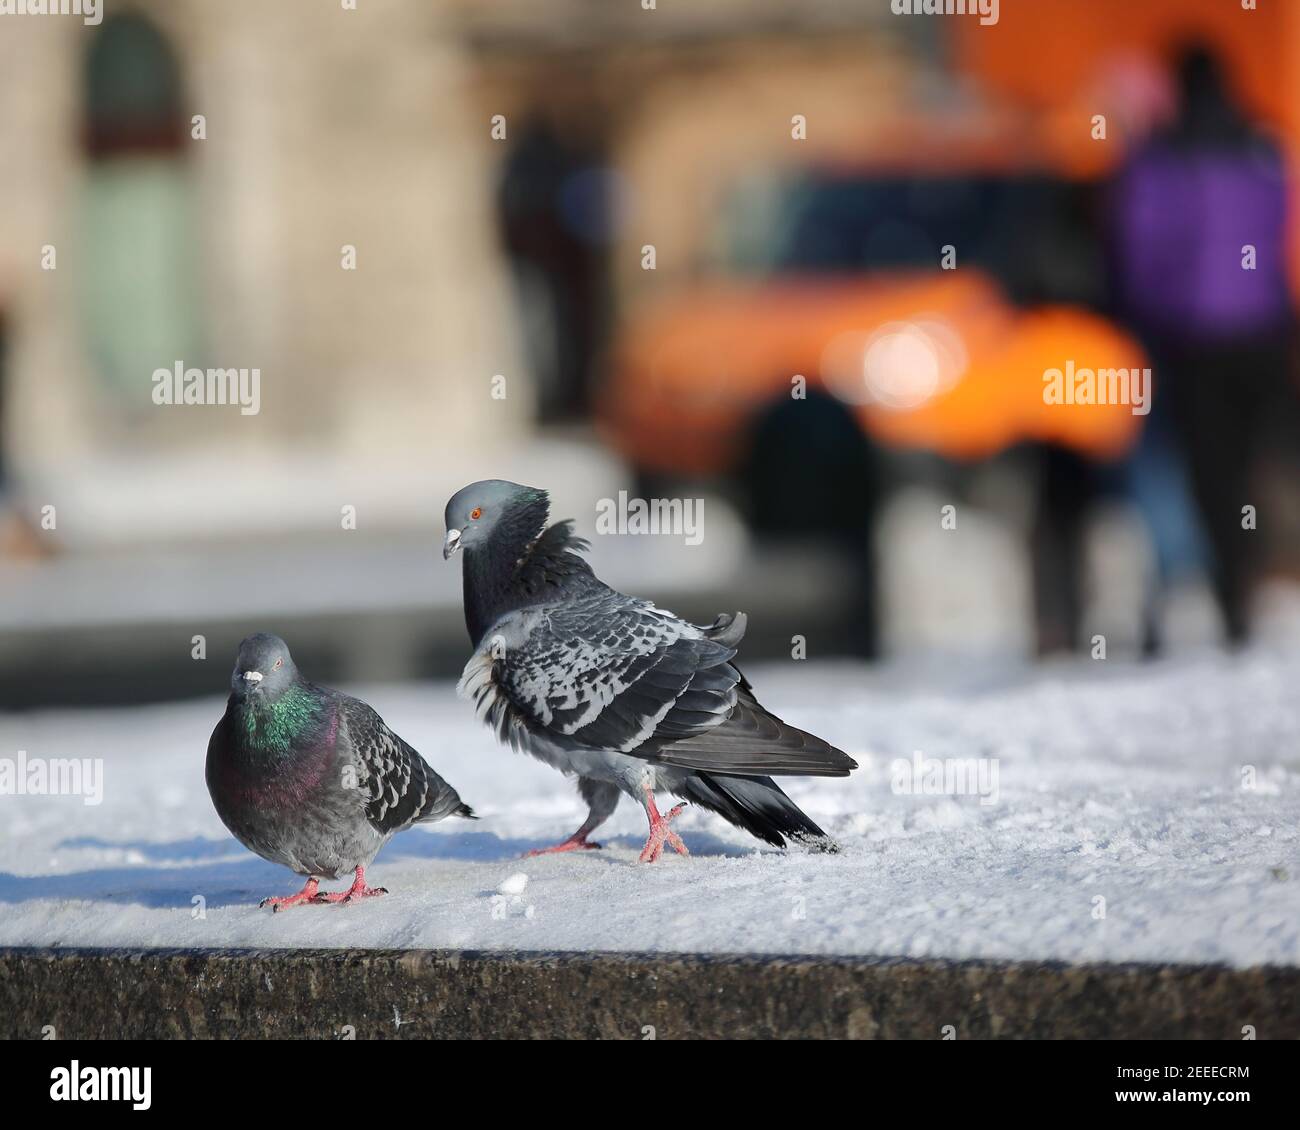 Il piccione maschile cerca di attrarre il piccione femminile in città, nevoso freddo giorno d'inverno Foto Stock